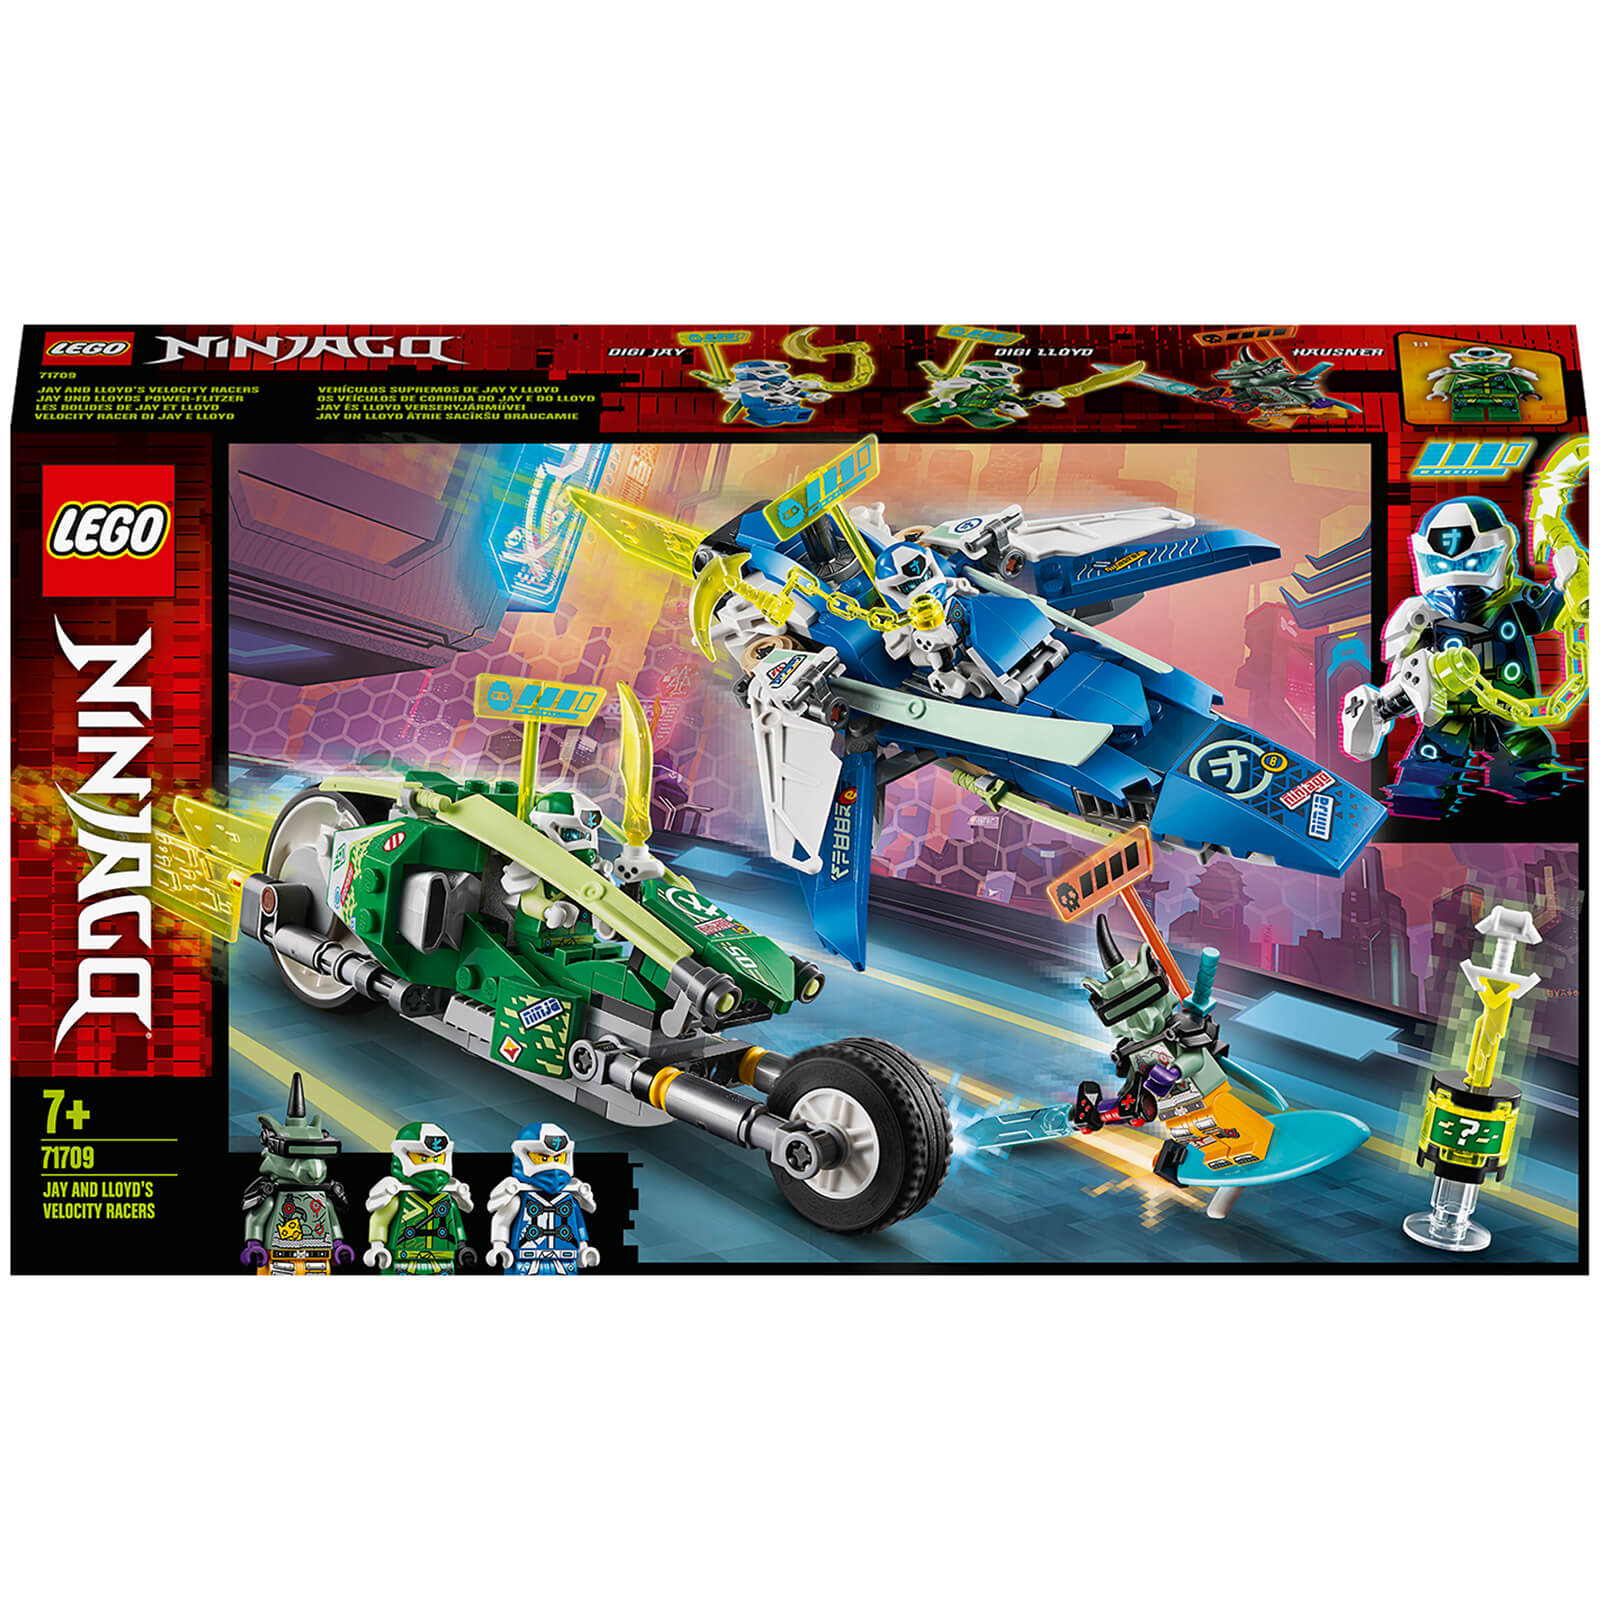 LEGO NINJAGO: Jay and Lloyd's Velocity Racers Set (71709)